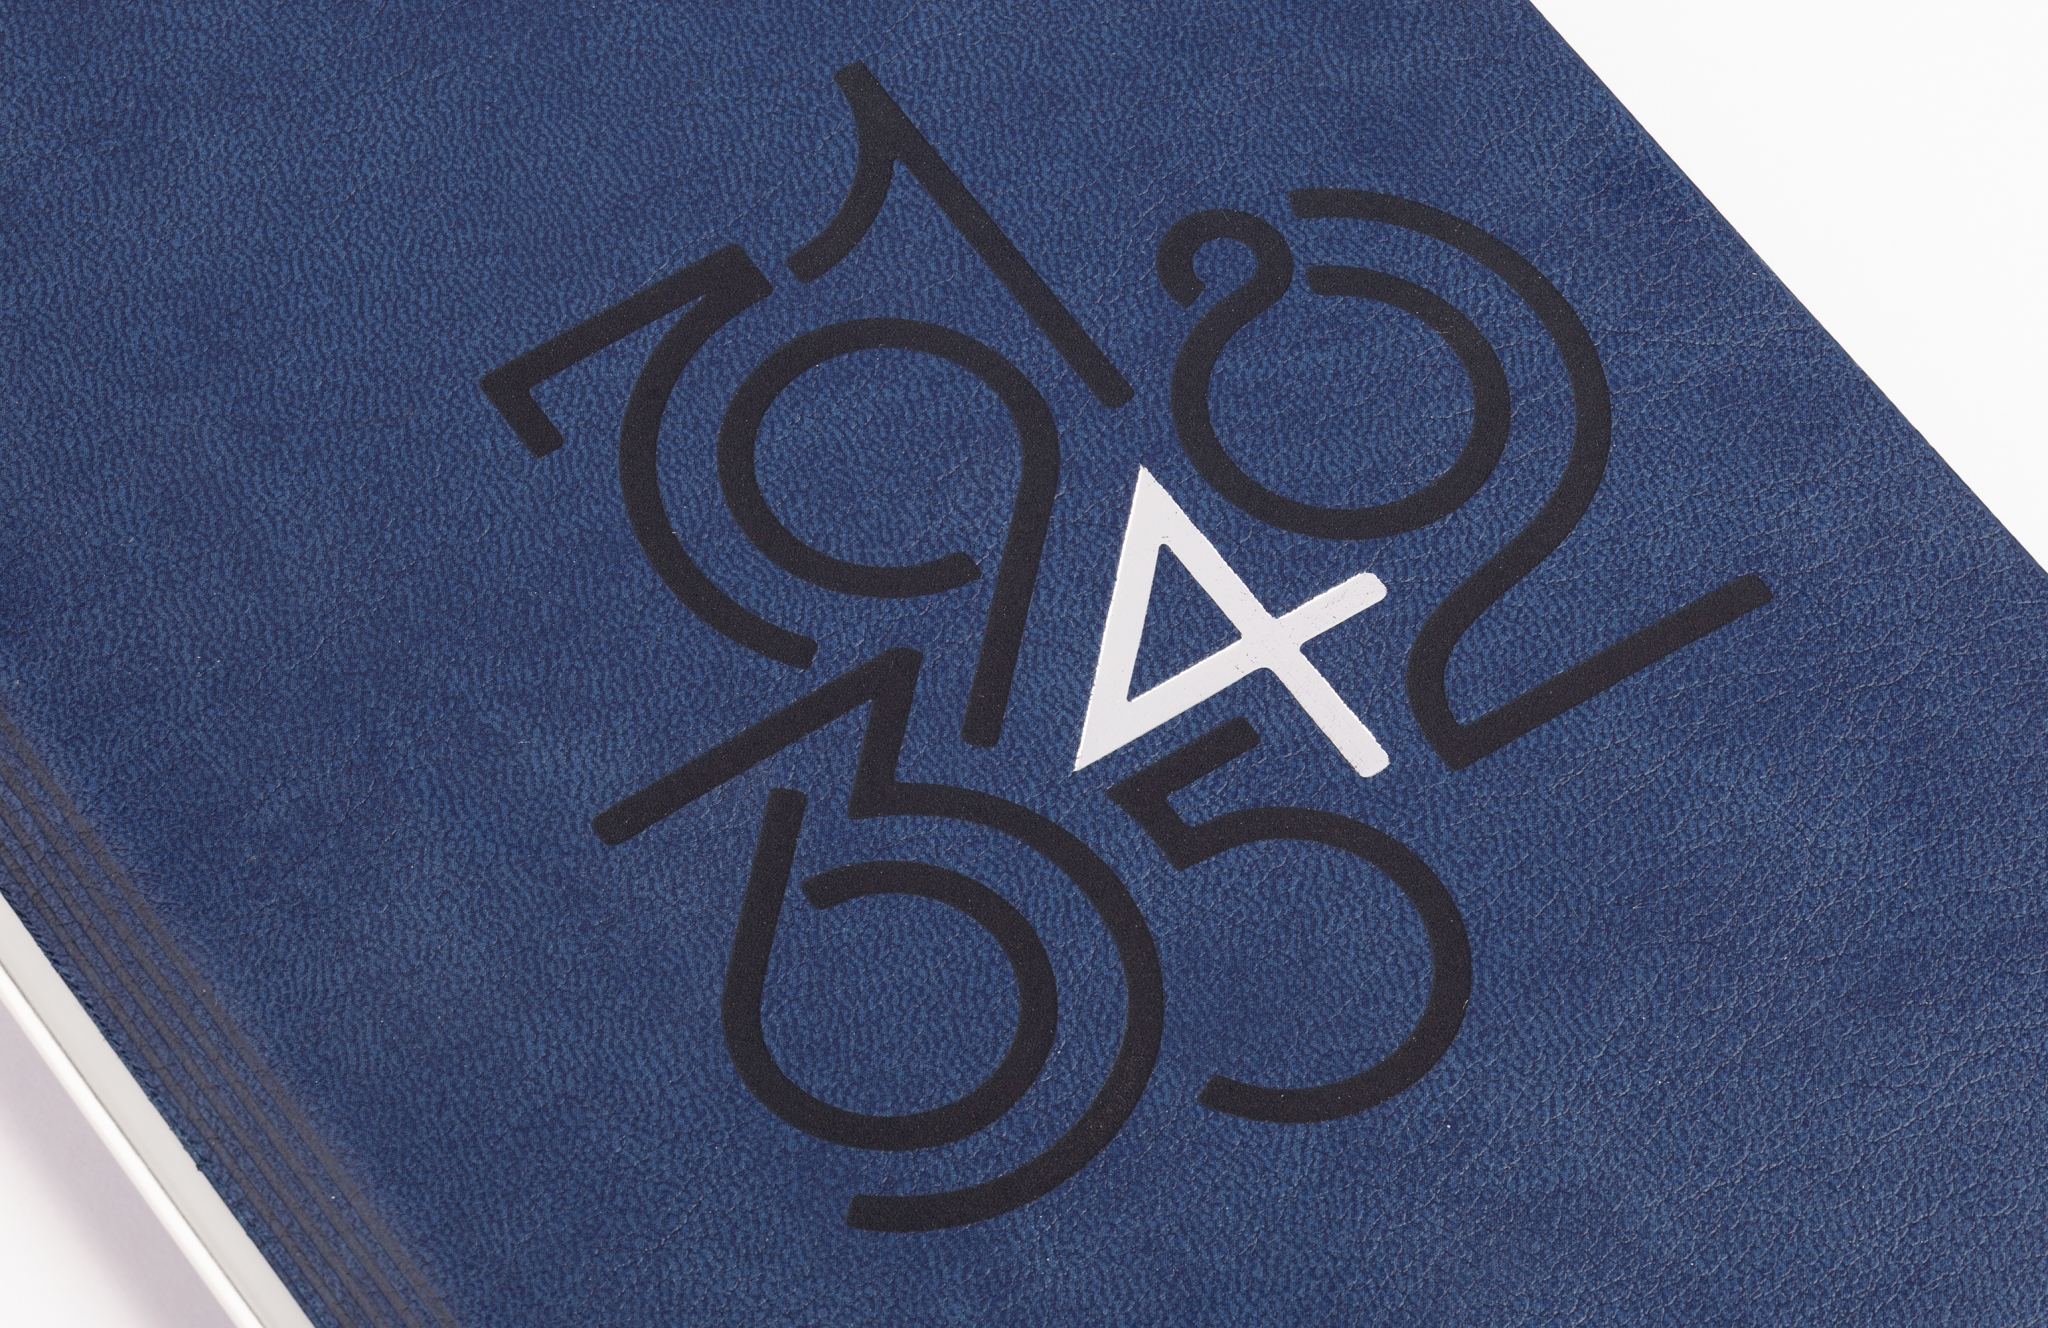 Ежедневник недатированный "Аскона", формат А5, гибкая обложка, синий, металл, кожзам